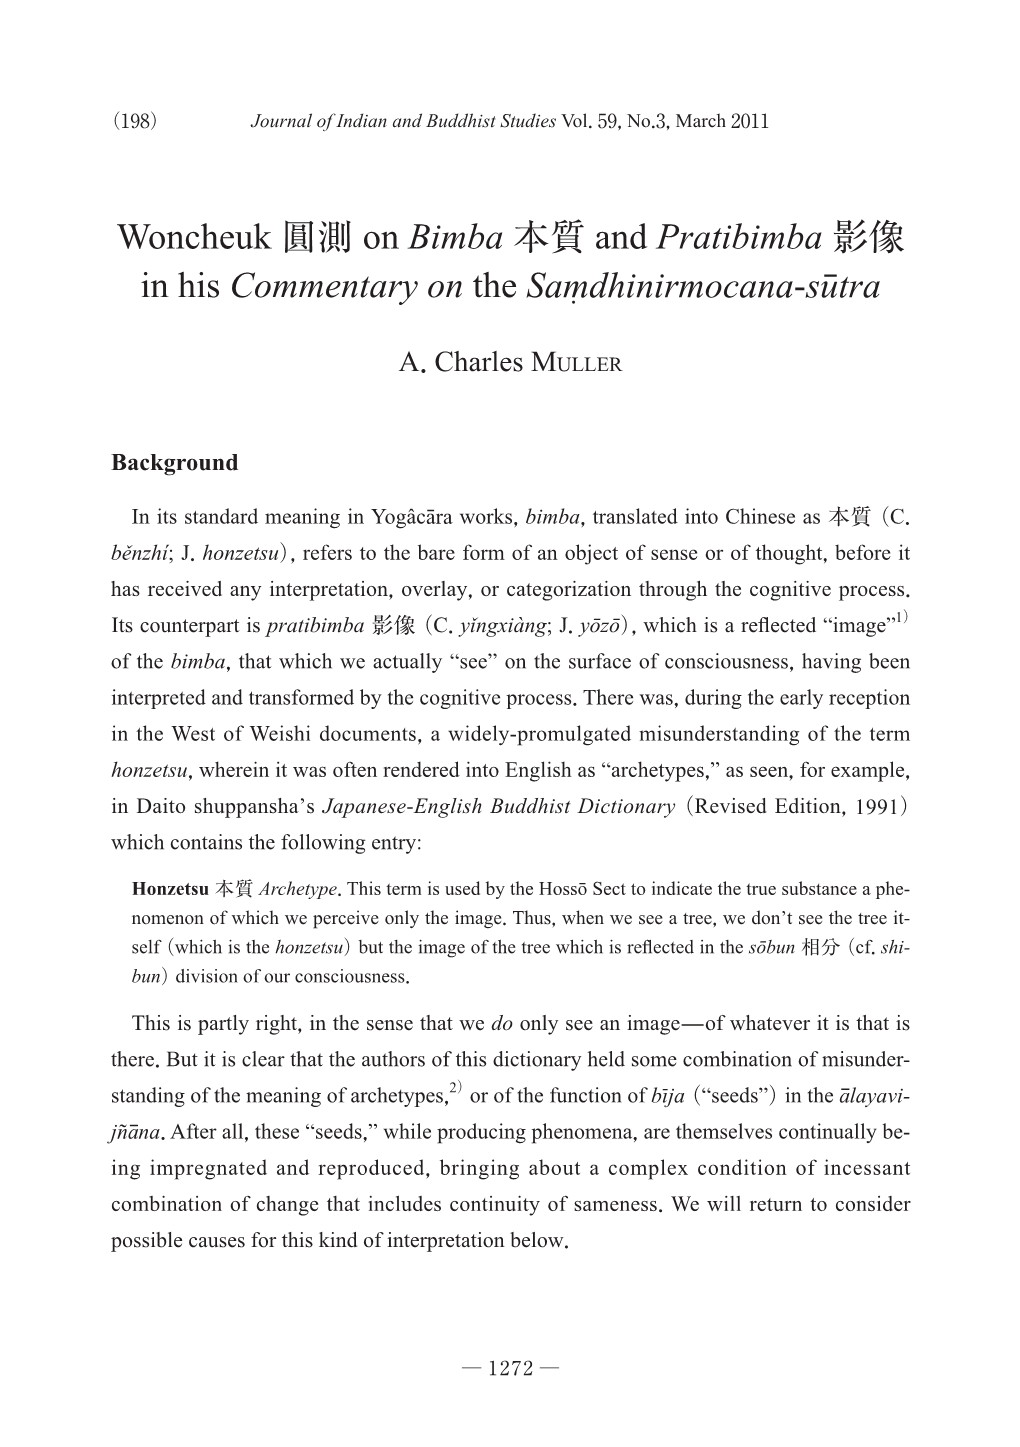 Woncheuk 圓測 on Bimba 本質 and Pratibimba 影像 in His Commentary on the Samdhinirmocana-Sutra